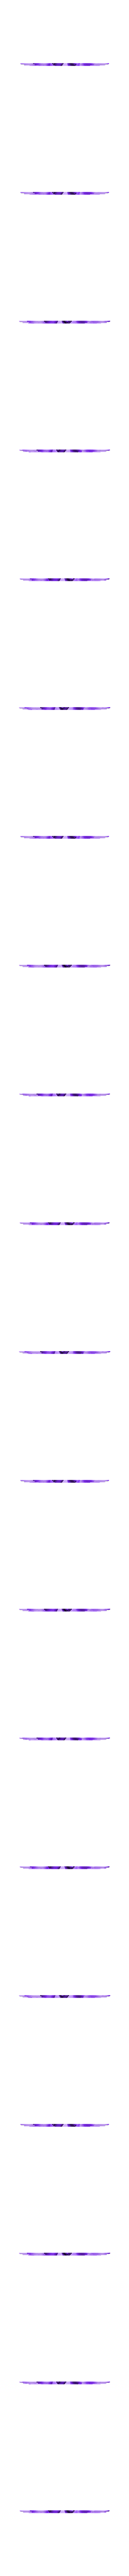 Bas-relief-pentacle-09-low.stl Télécharger fichier 3MF Bas-relief réel relief pagan magic pentaclen pour protection sorcière montage mural maison chambre autel pièce pt-09 3d-print et cnc • Plan pour imprimante 3D, Dzusto